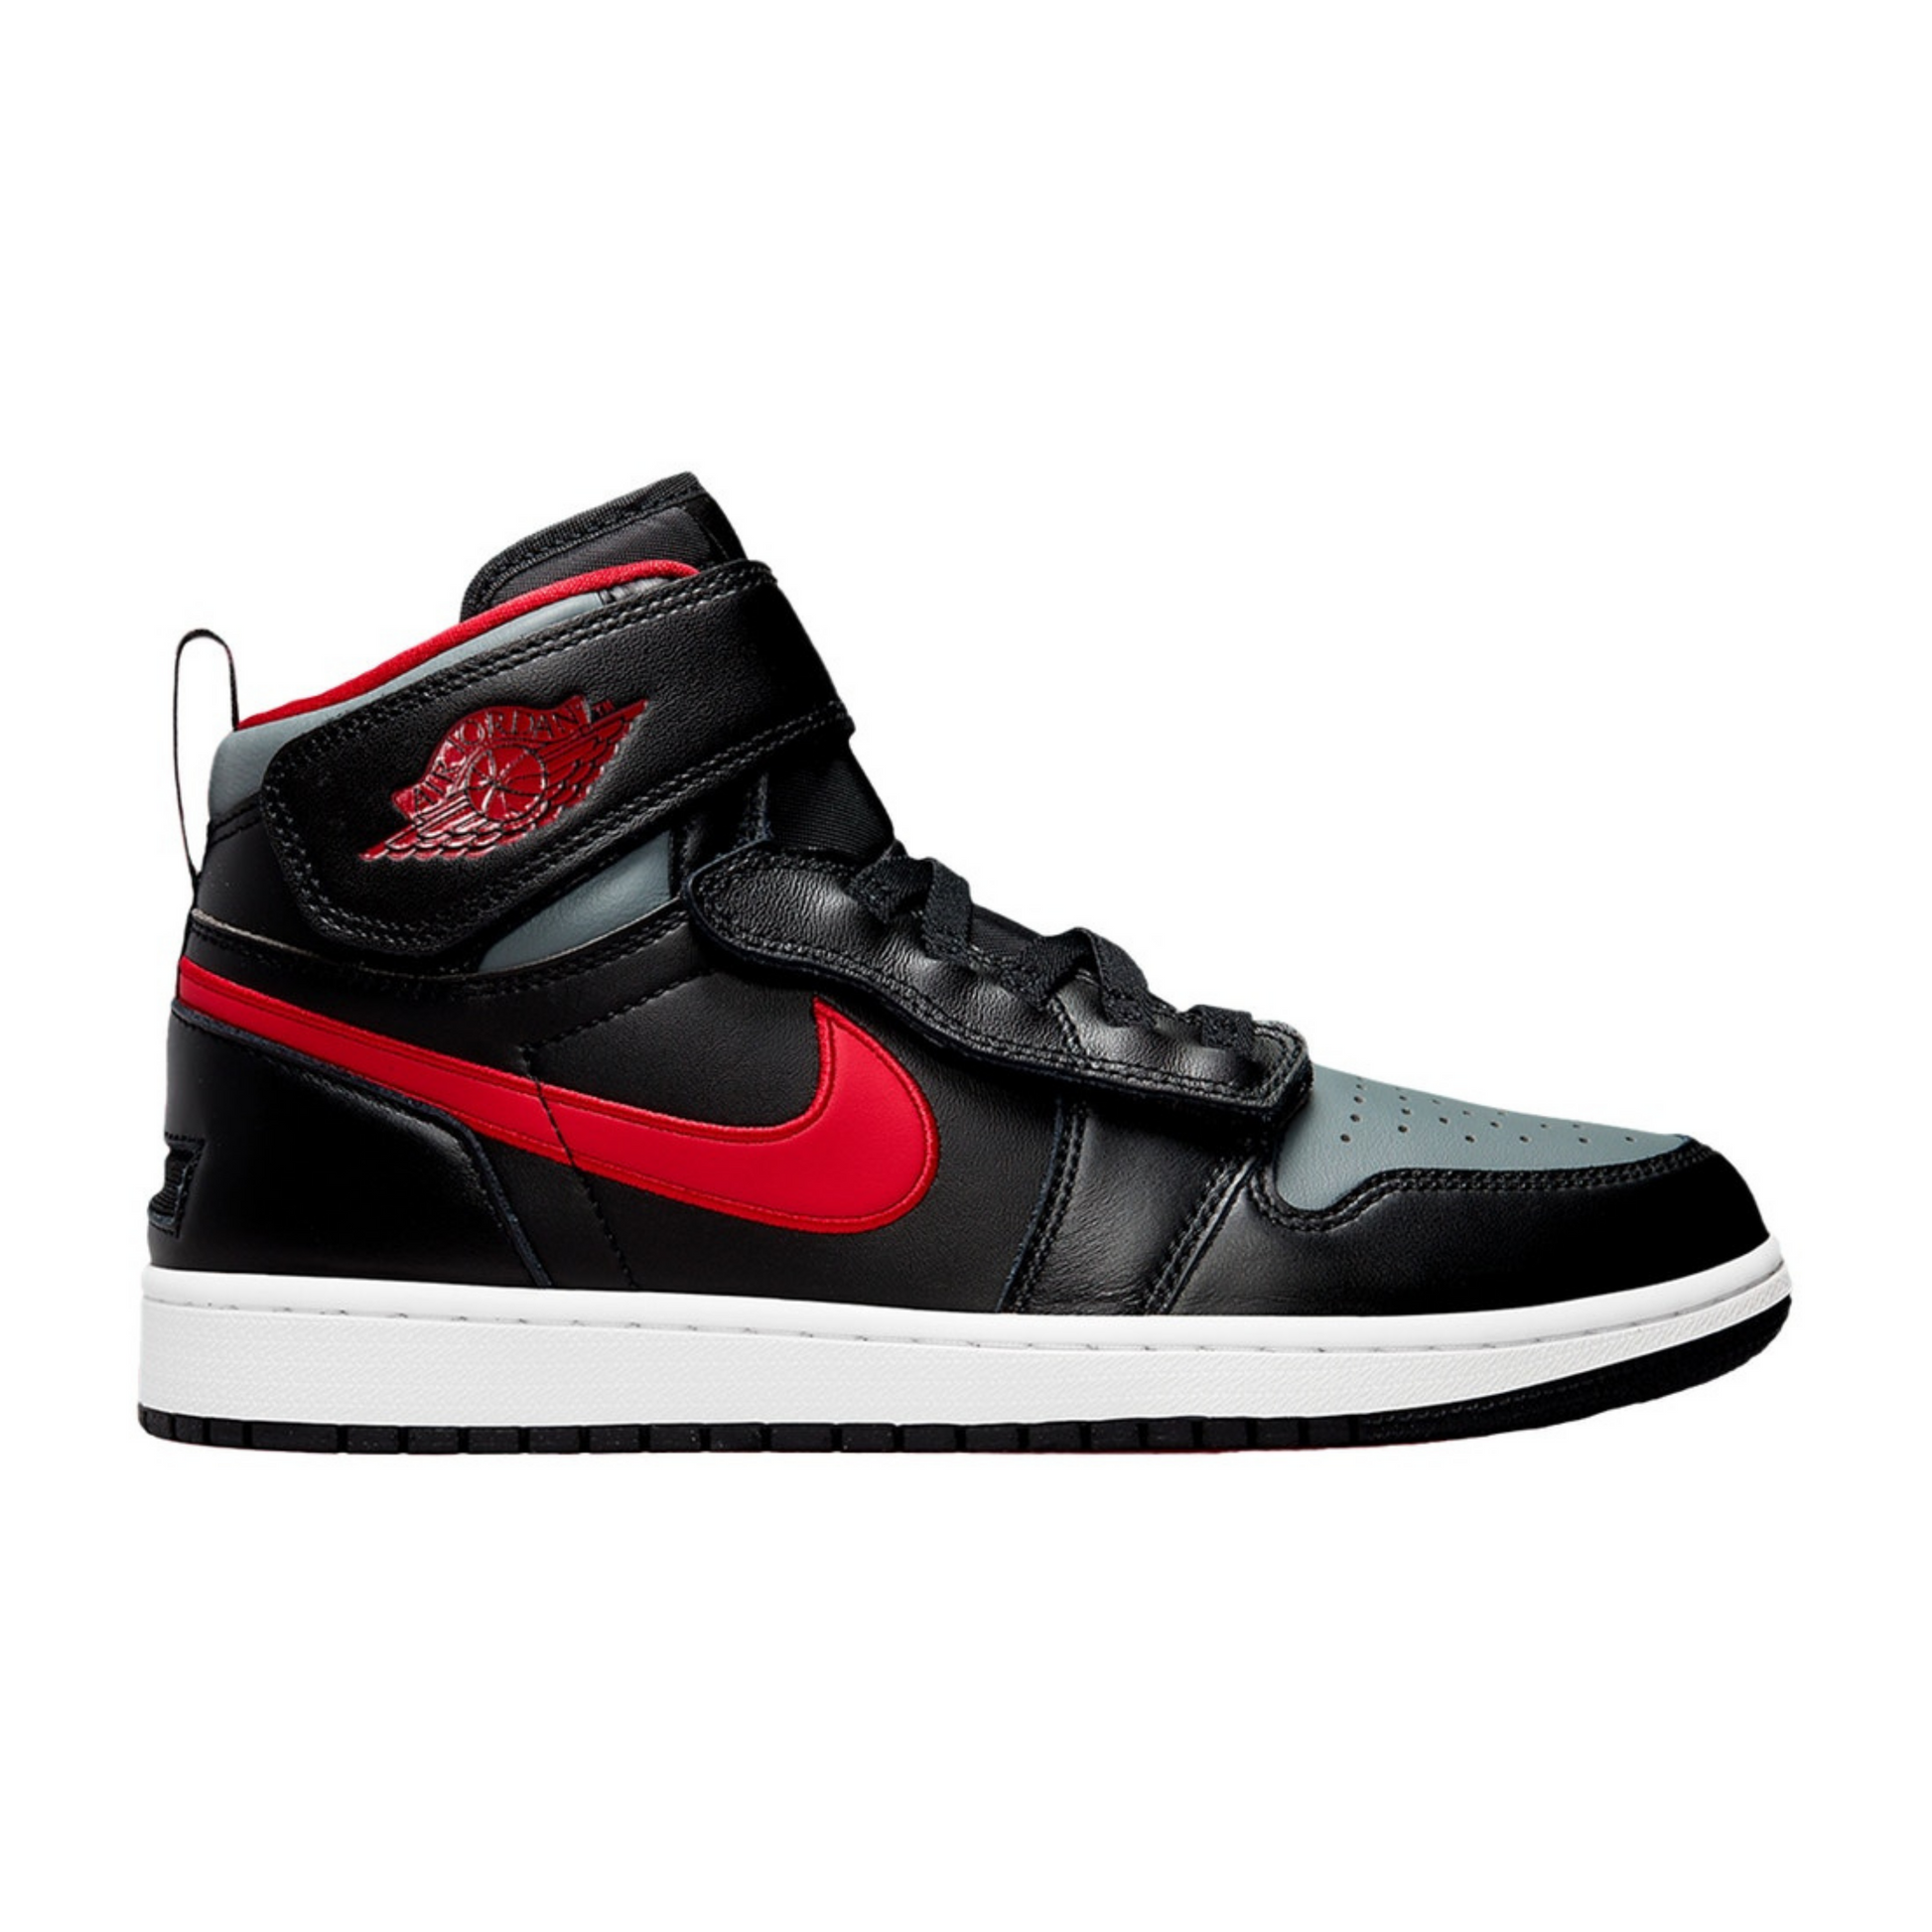 Air Jordan 1 Flyease Black Gym Red Smoke Grey Black Red Sneakers